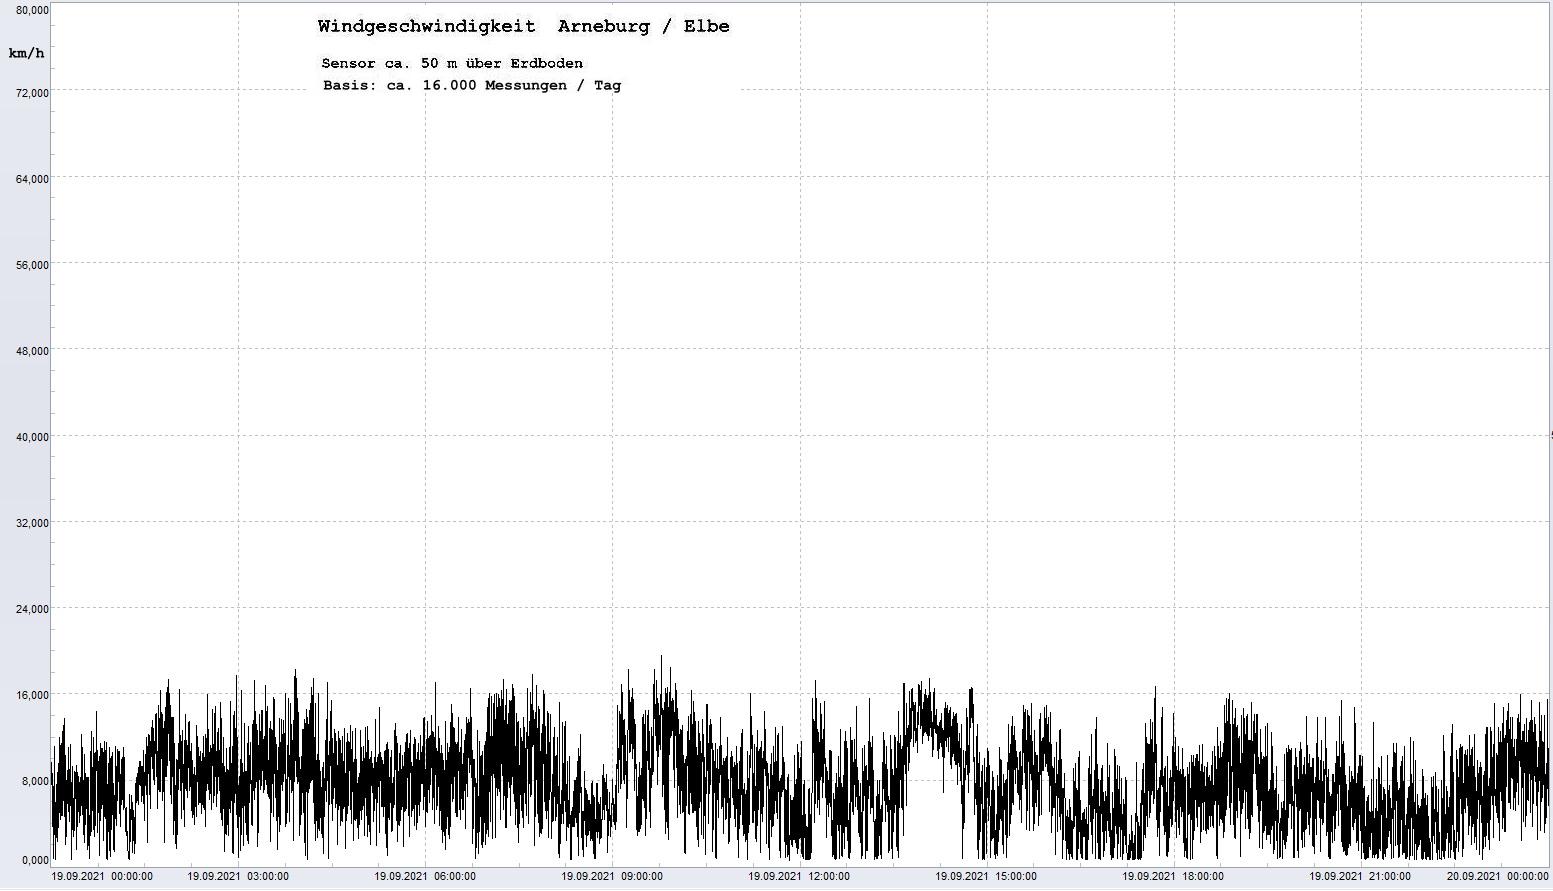 Arneburg Tages-Diagramm Winddaten, 19.09.2021
  Diagramm, Sensor auf Gebude, ca. 50 m ber Erdboden, Basis: 5s-Aufzeichnung